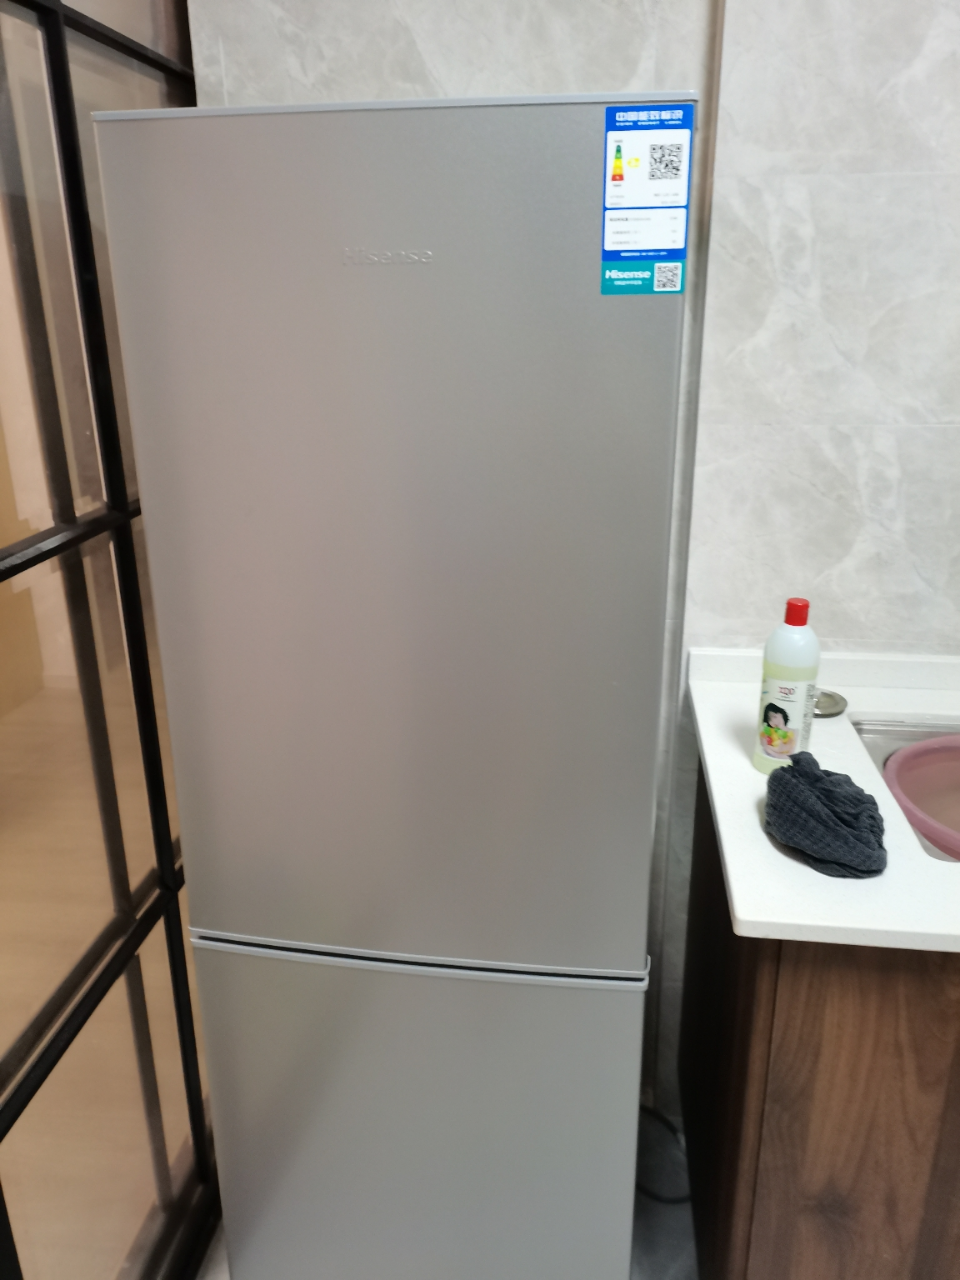 我们为您提供海信冰箱 直冷的优质评价,包括海信冰箱 直冷商品评价